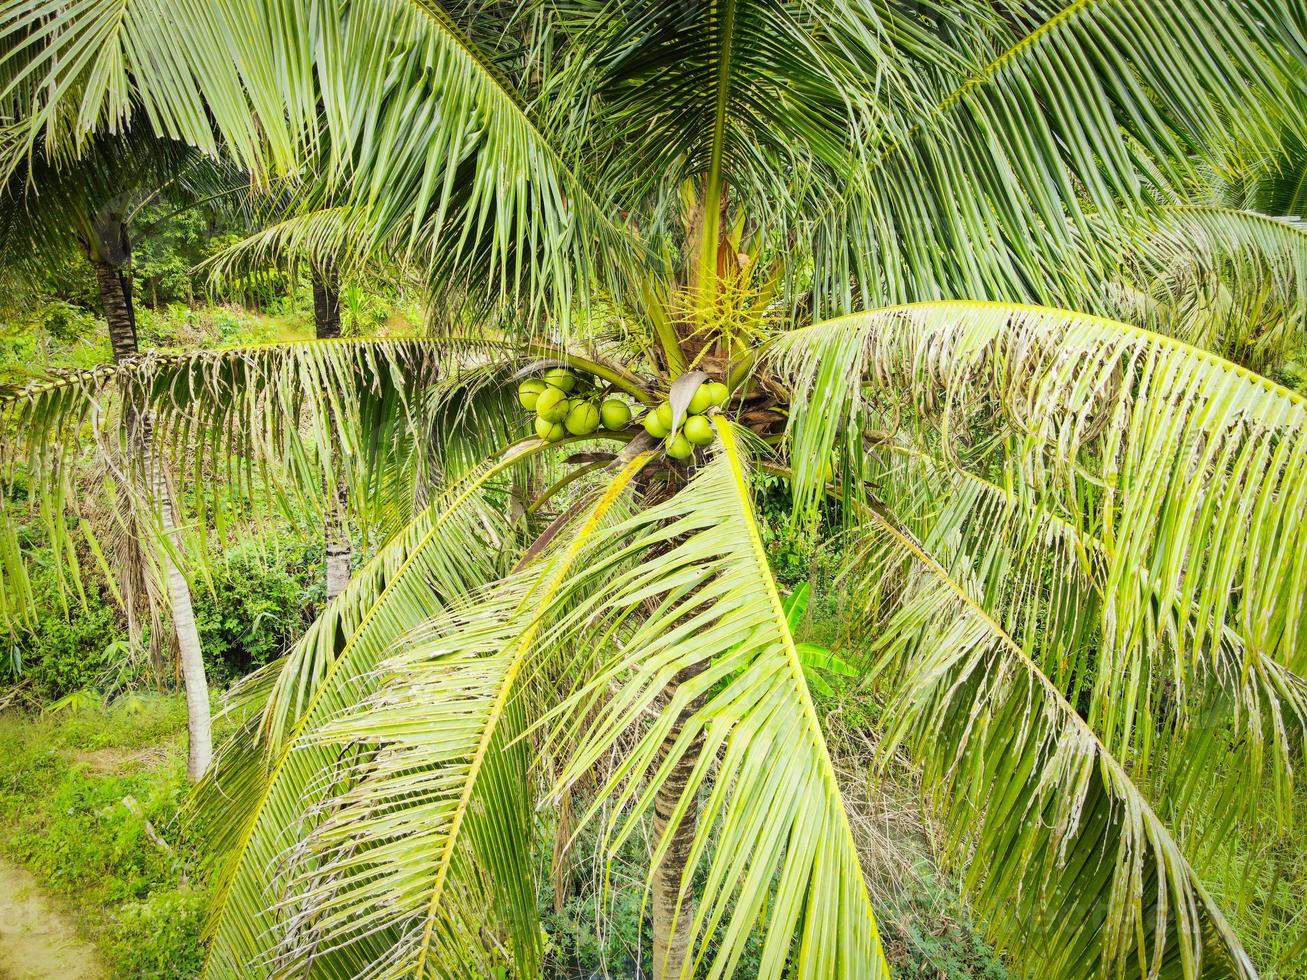 Coco joven en el árbol, fruta tropical de la palma de coco verde fresca en la planta en el jardín el día de verano foto